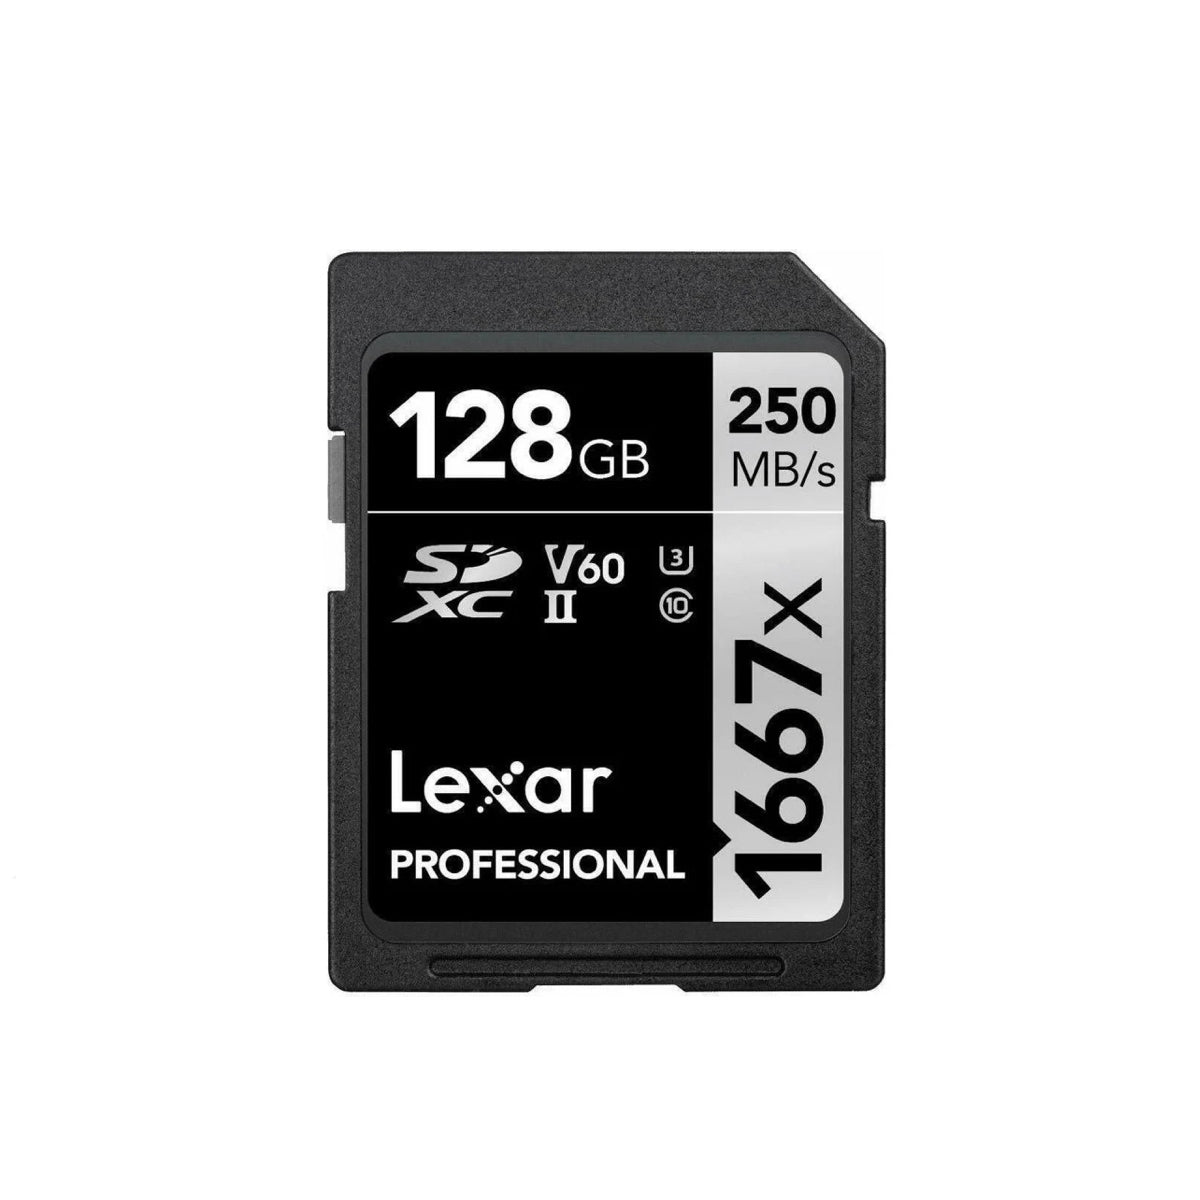 SDXC - II, V60 Card, 128GB, 250MB/s